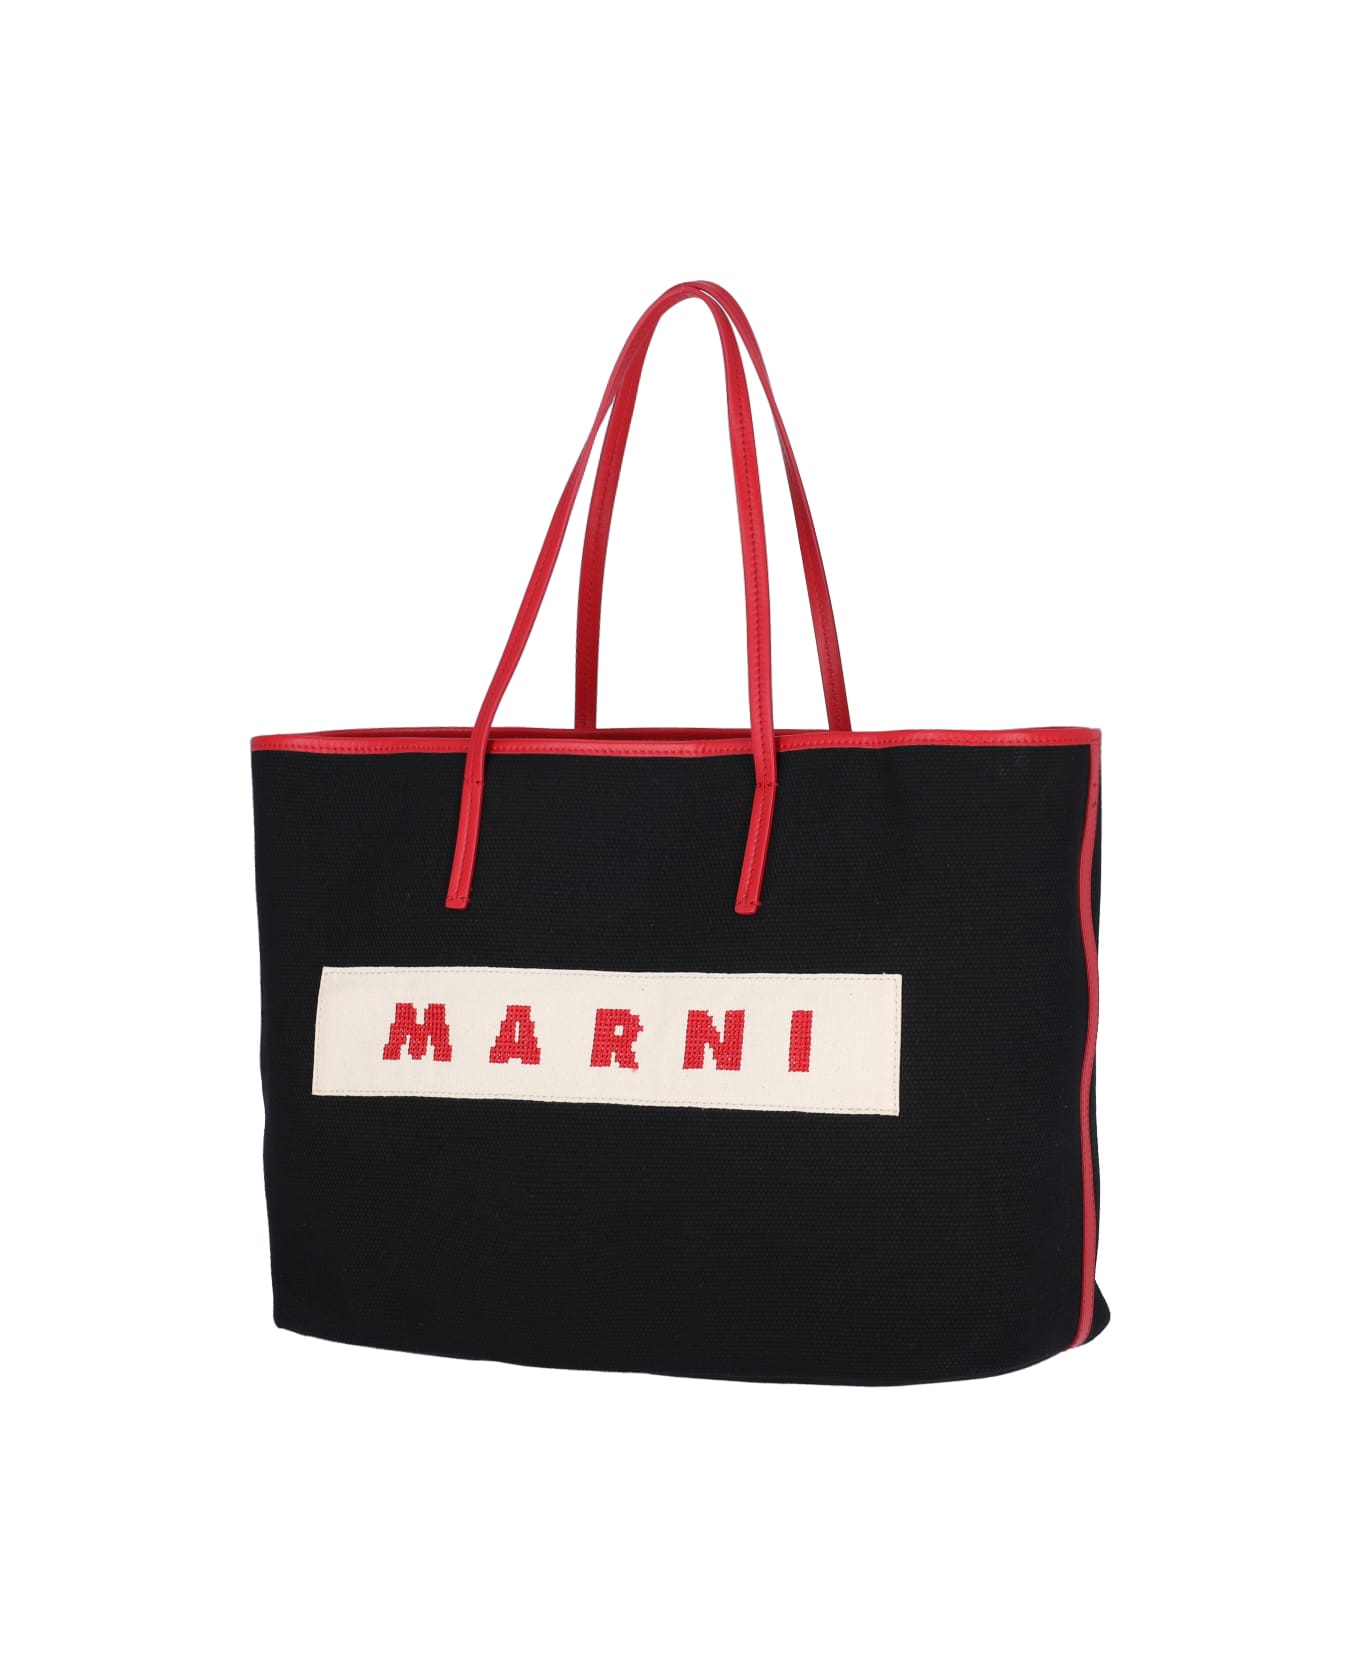 Marni Logo Tote Bag - Multicolor